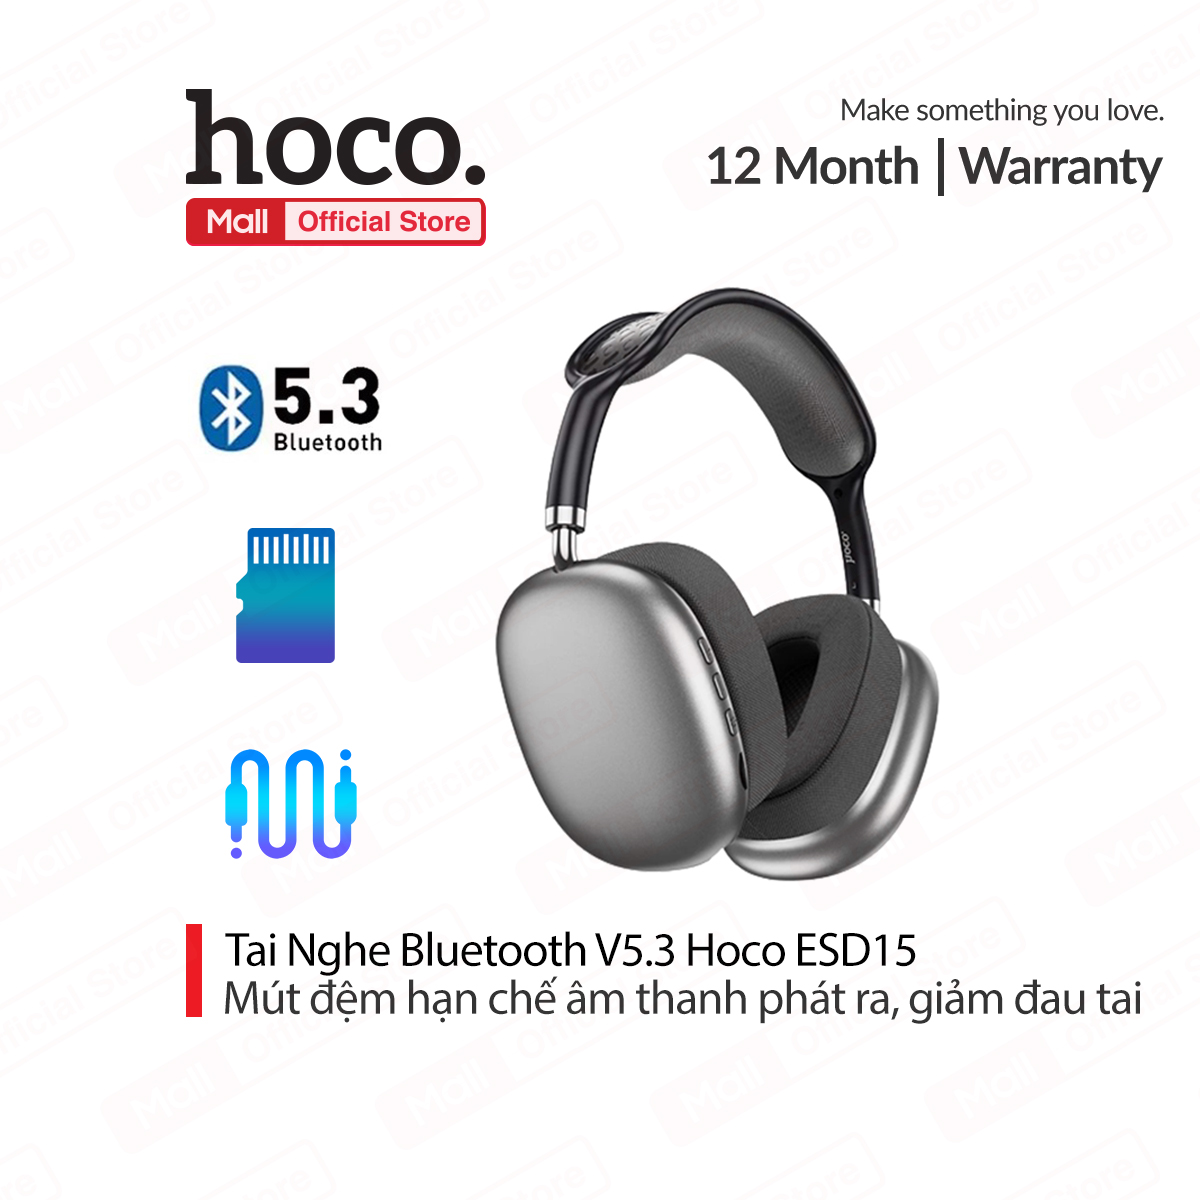 Tai Nghe Bluetooth V5.3 Hoco ESD15 có mút đệm hạn chế âm thanh phát ra